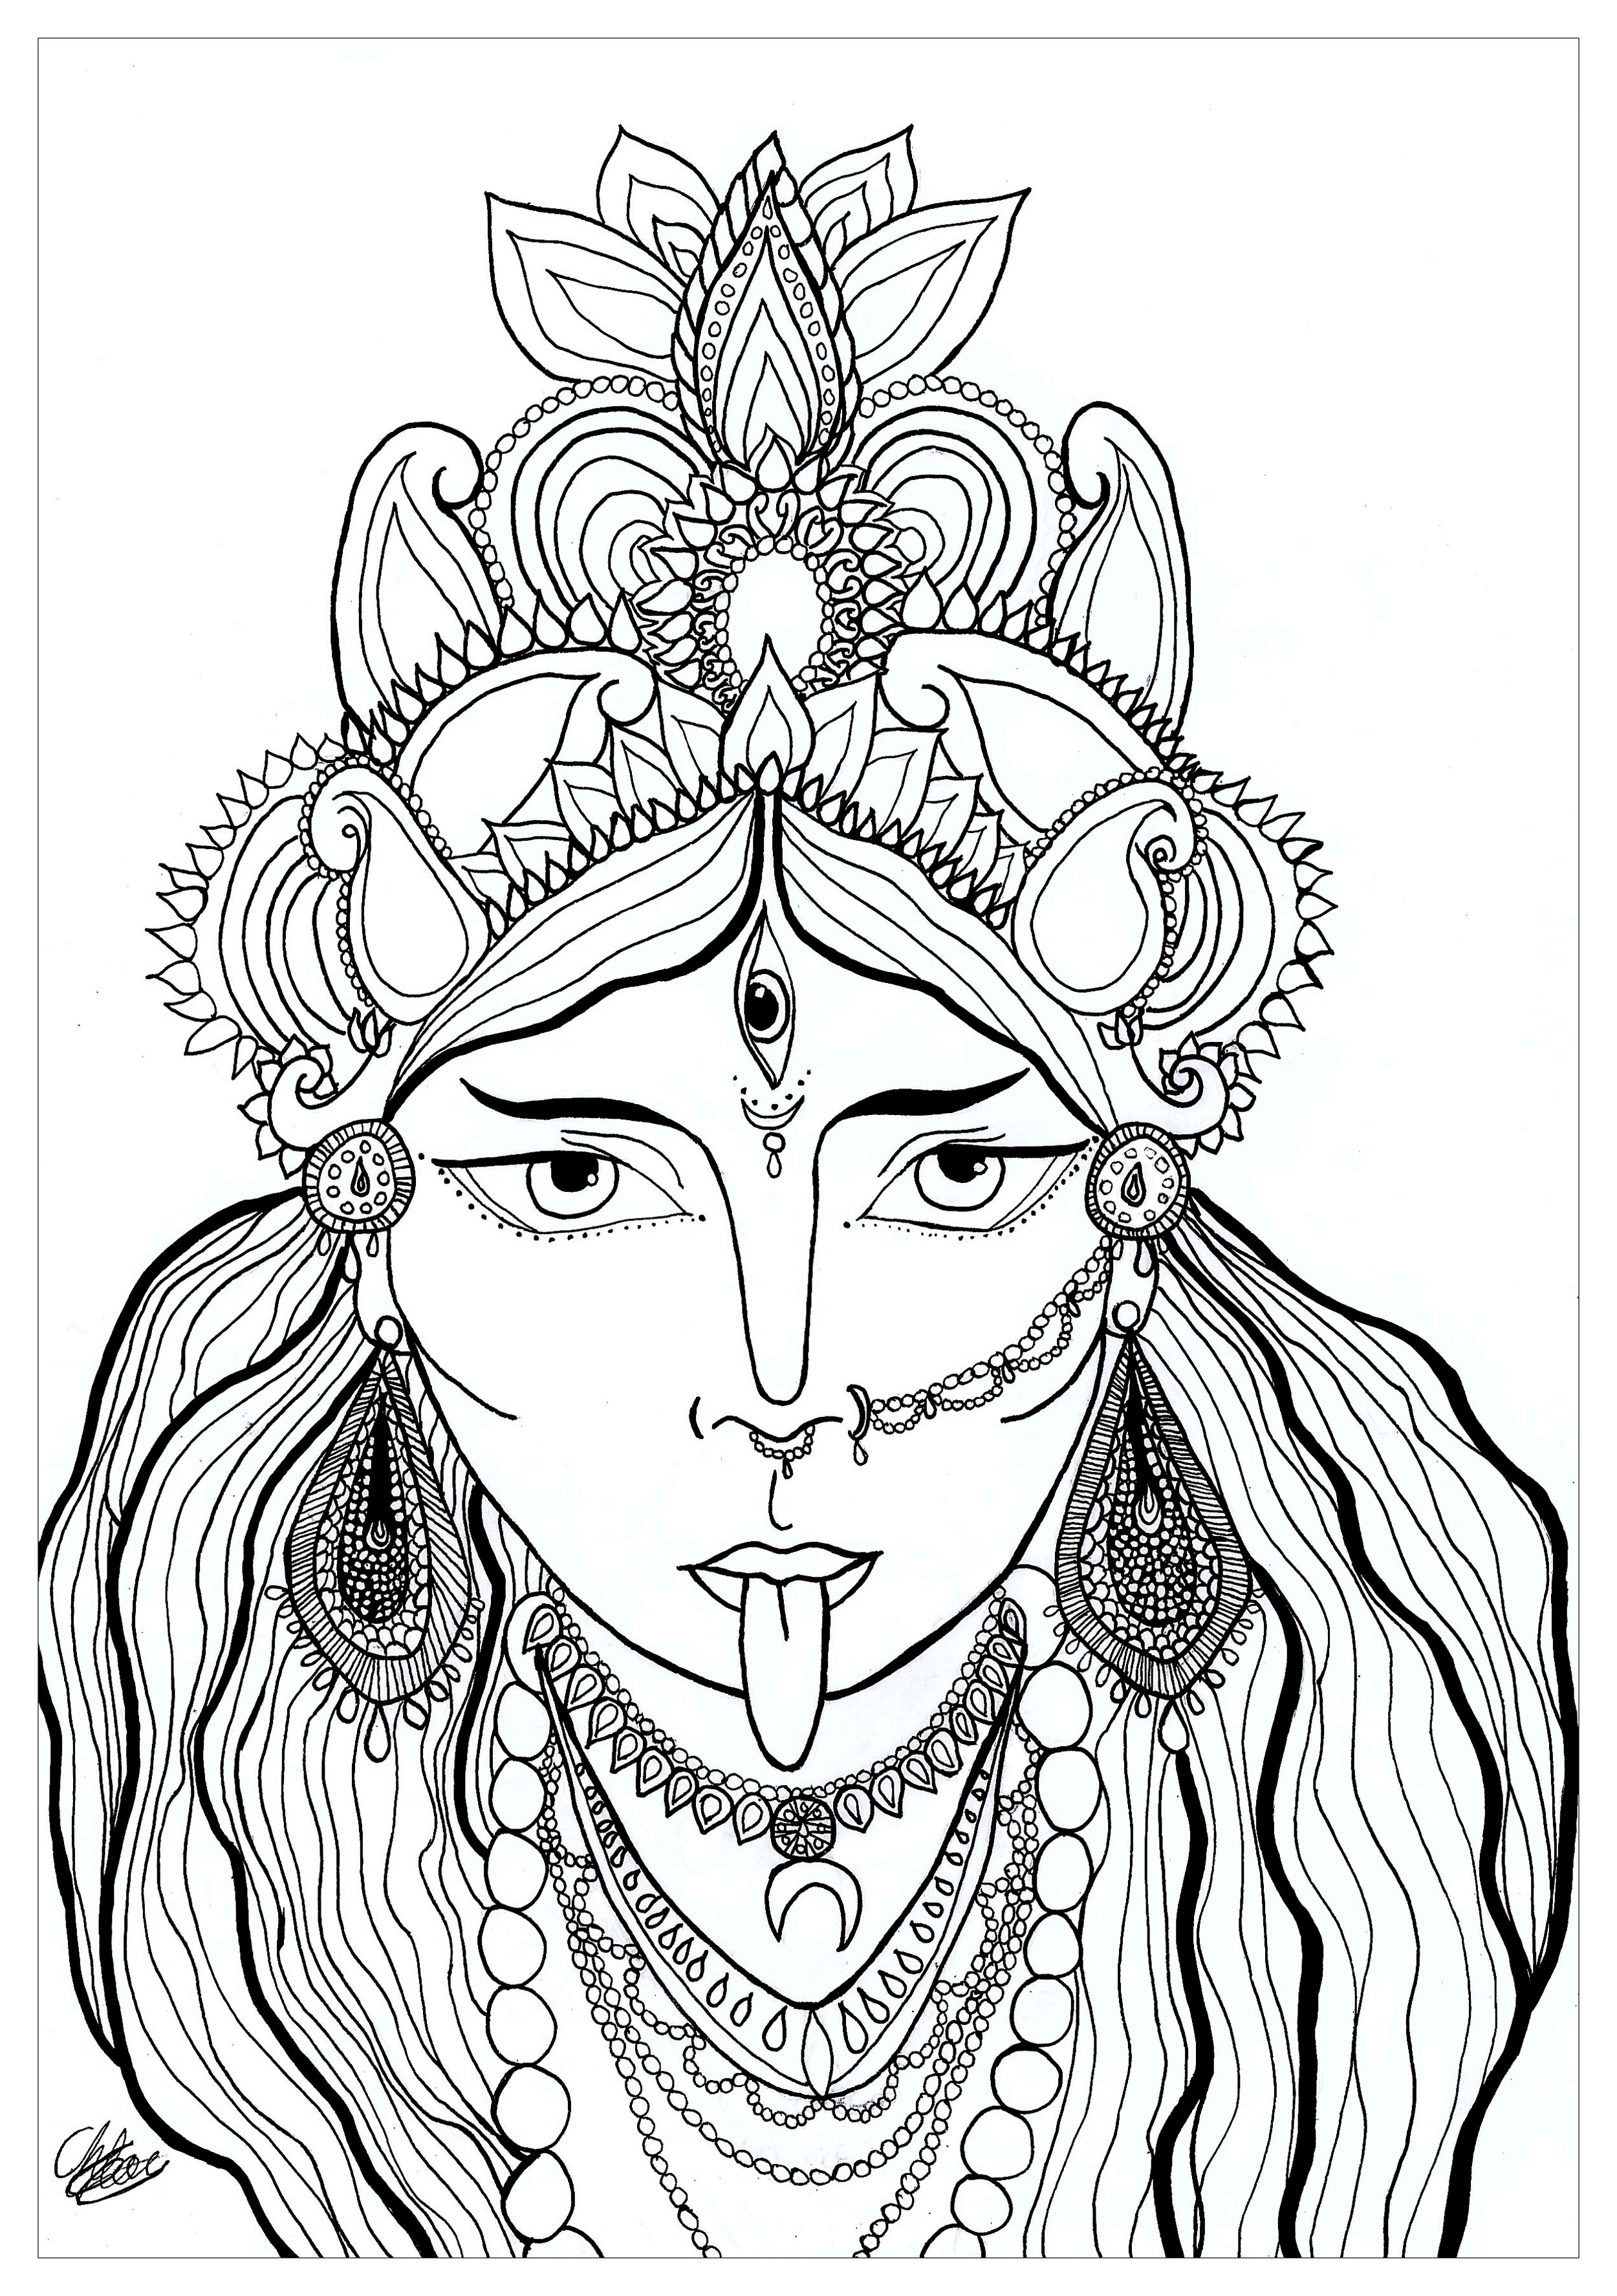 Ausmalbild der Göttin Kali, die aus der hinduistischen Religion stammt. Sie ist die Göttin der Bewahrung, Transformation und Zerstörung. Kali wird auch die schwarze Göttin genannt, Künstler : Chloe